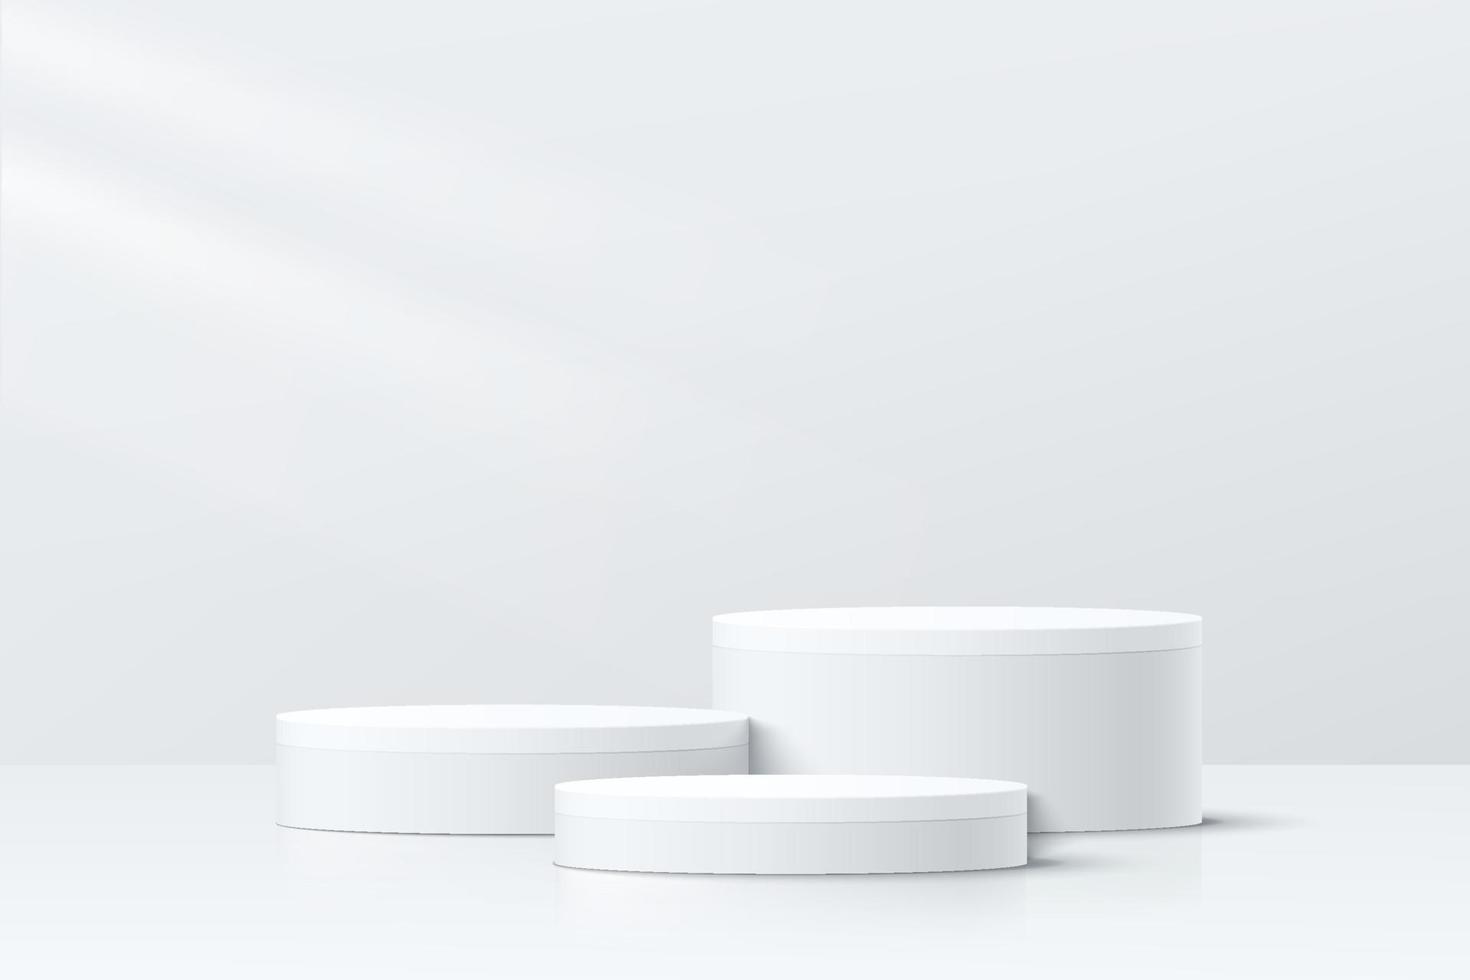 abstract wit en grijs 3d kamer met reeks van realistisch wit cilinder voetstuk podium. minimaal tafereel voor Product Scherm presentatie. meetkundig platform ontwerp. stadium voor vitrine. vector illustratie